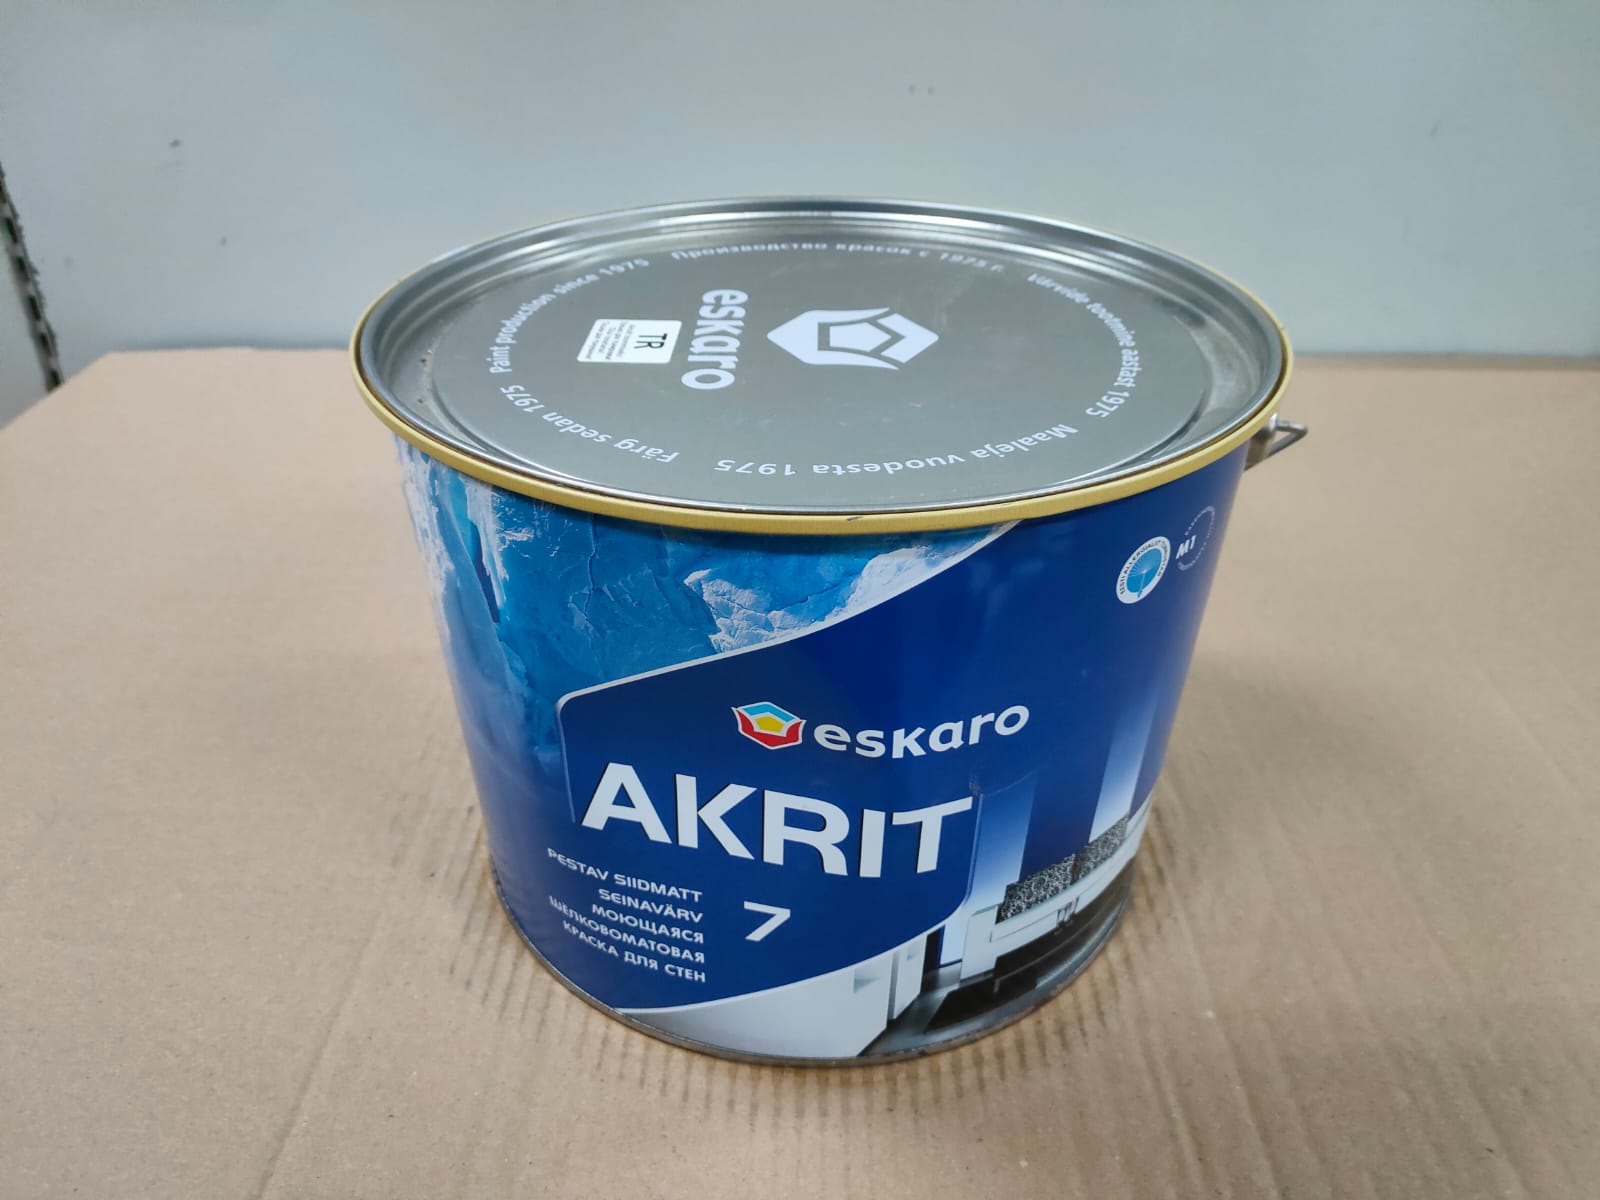 Моющаяся шелковоматовая краска для стен Eskaro Akrit 7 (База TR - прозрачная) 9,5 л